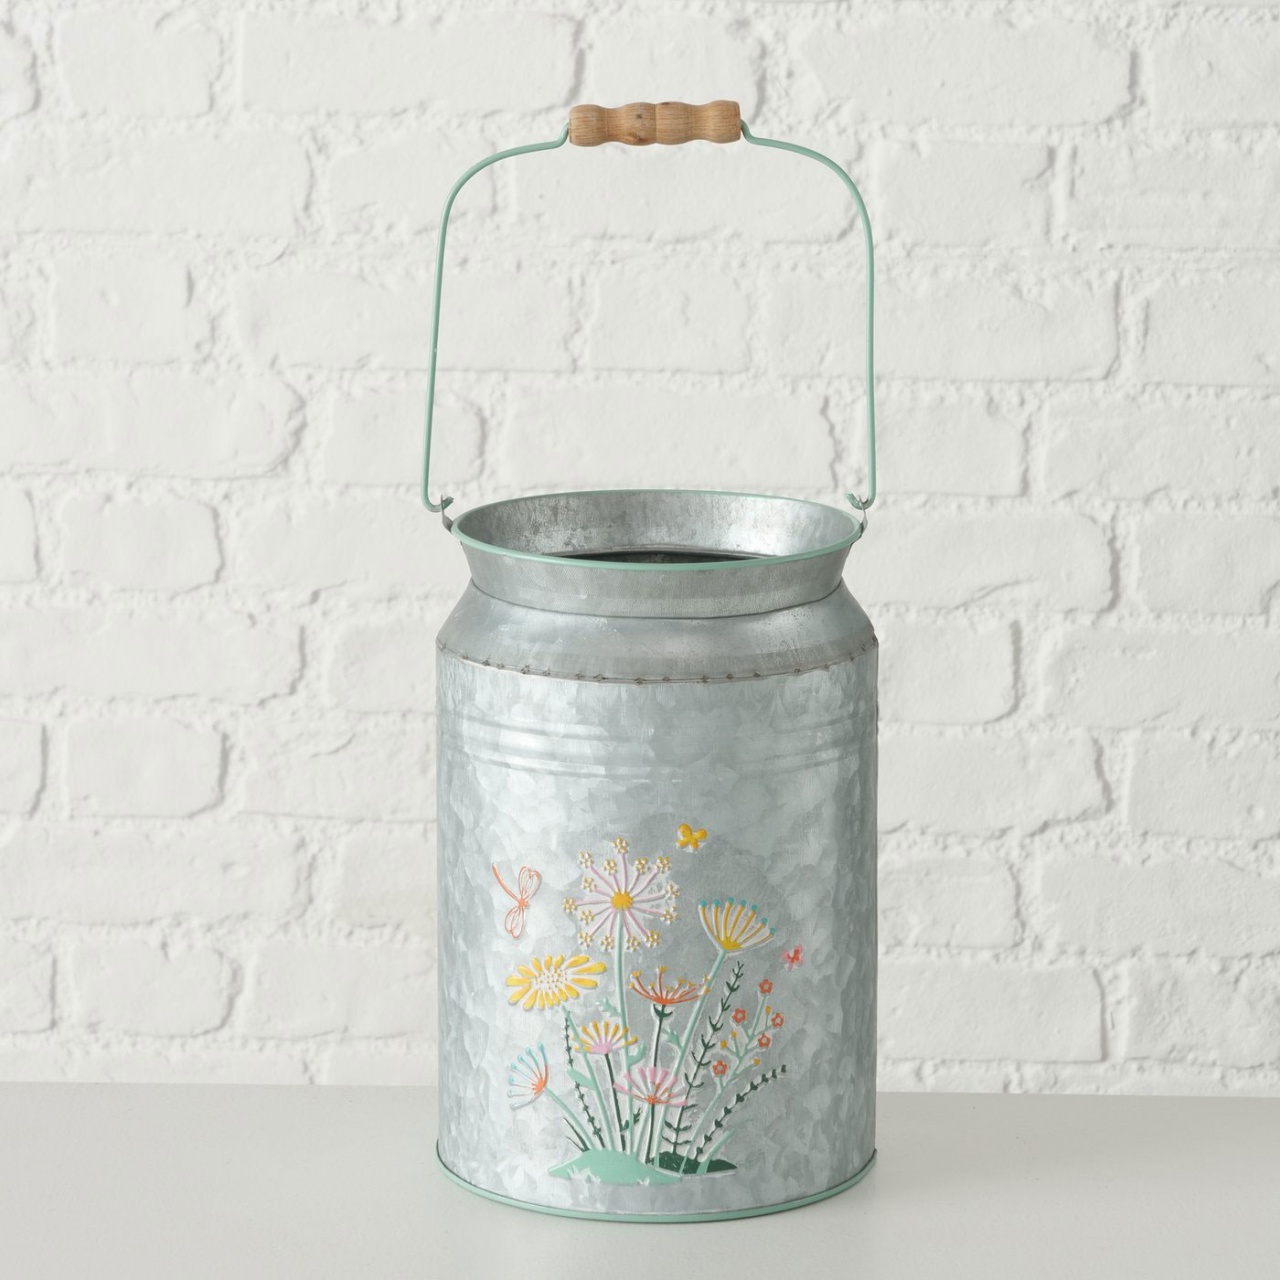 Vase Milchkanne Floriana Blumenmotiv aus Zink H 24cm